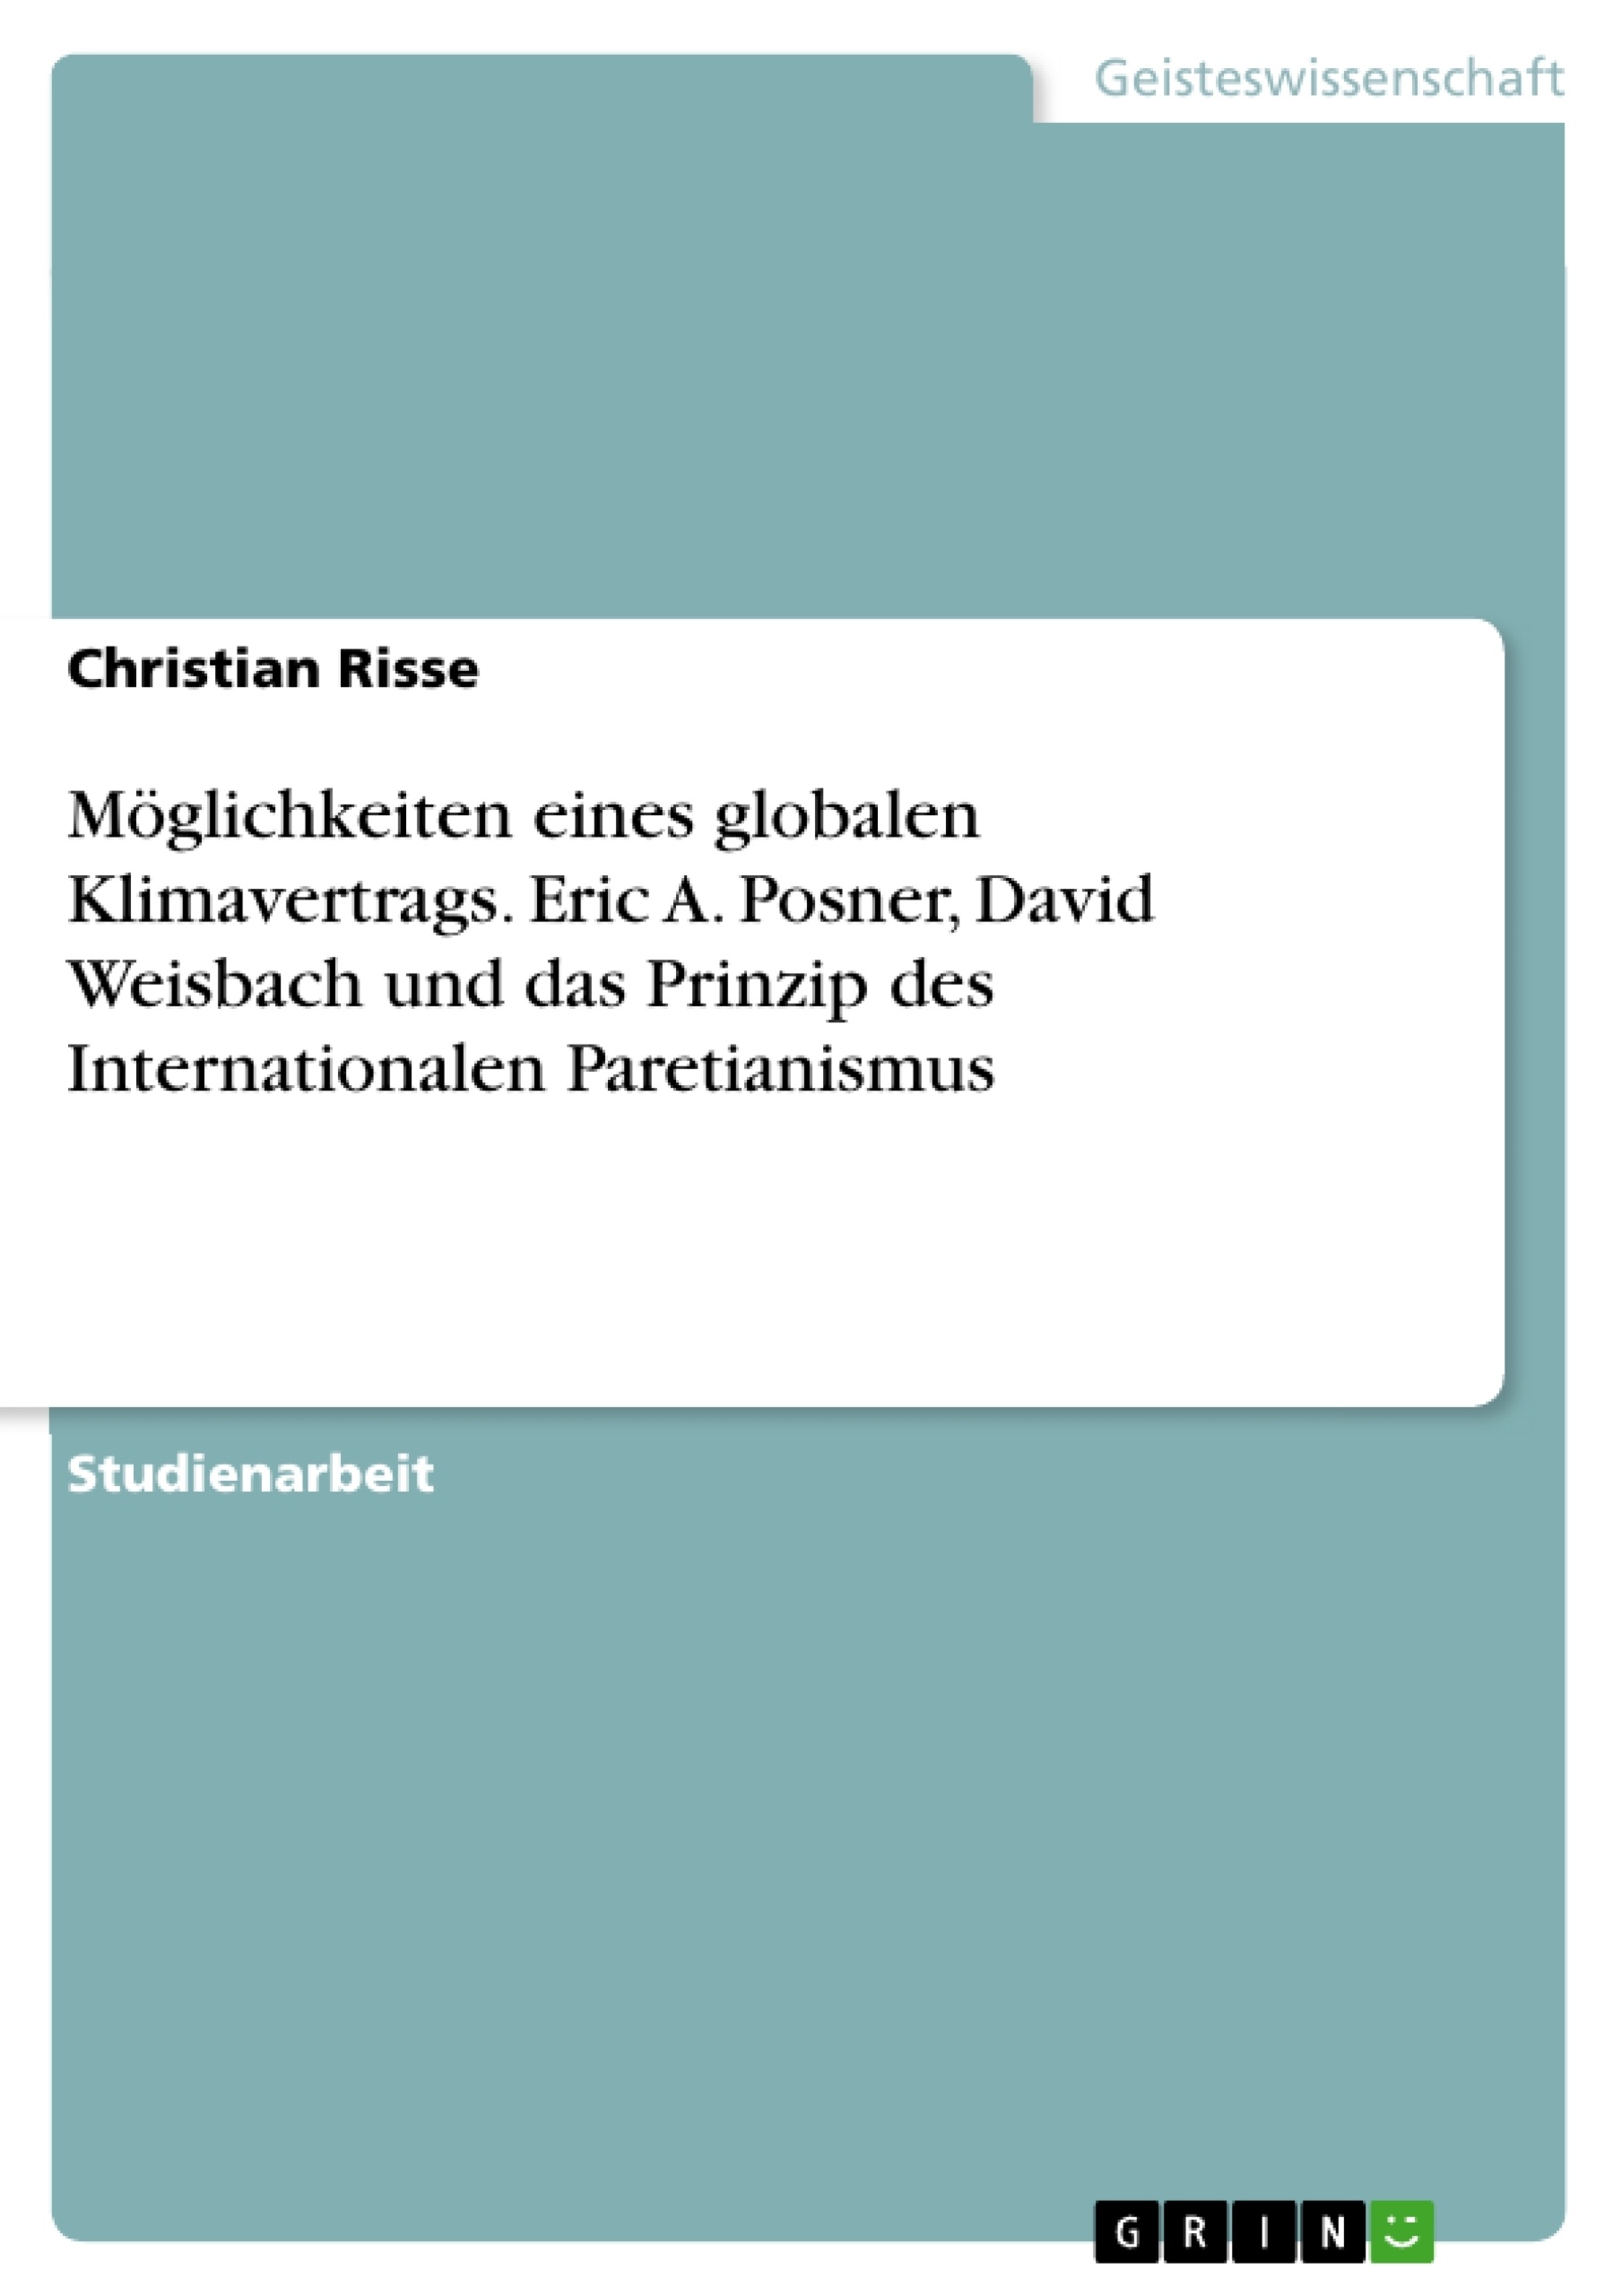 Title: Möglichkeiten eines globalen Klimavertrags. Eric A. Posner, David Weisbach und das Prinzip des Internationalen Paretianismus